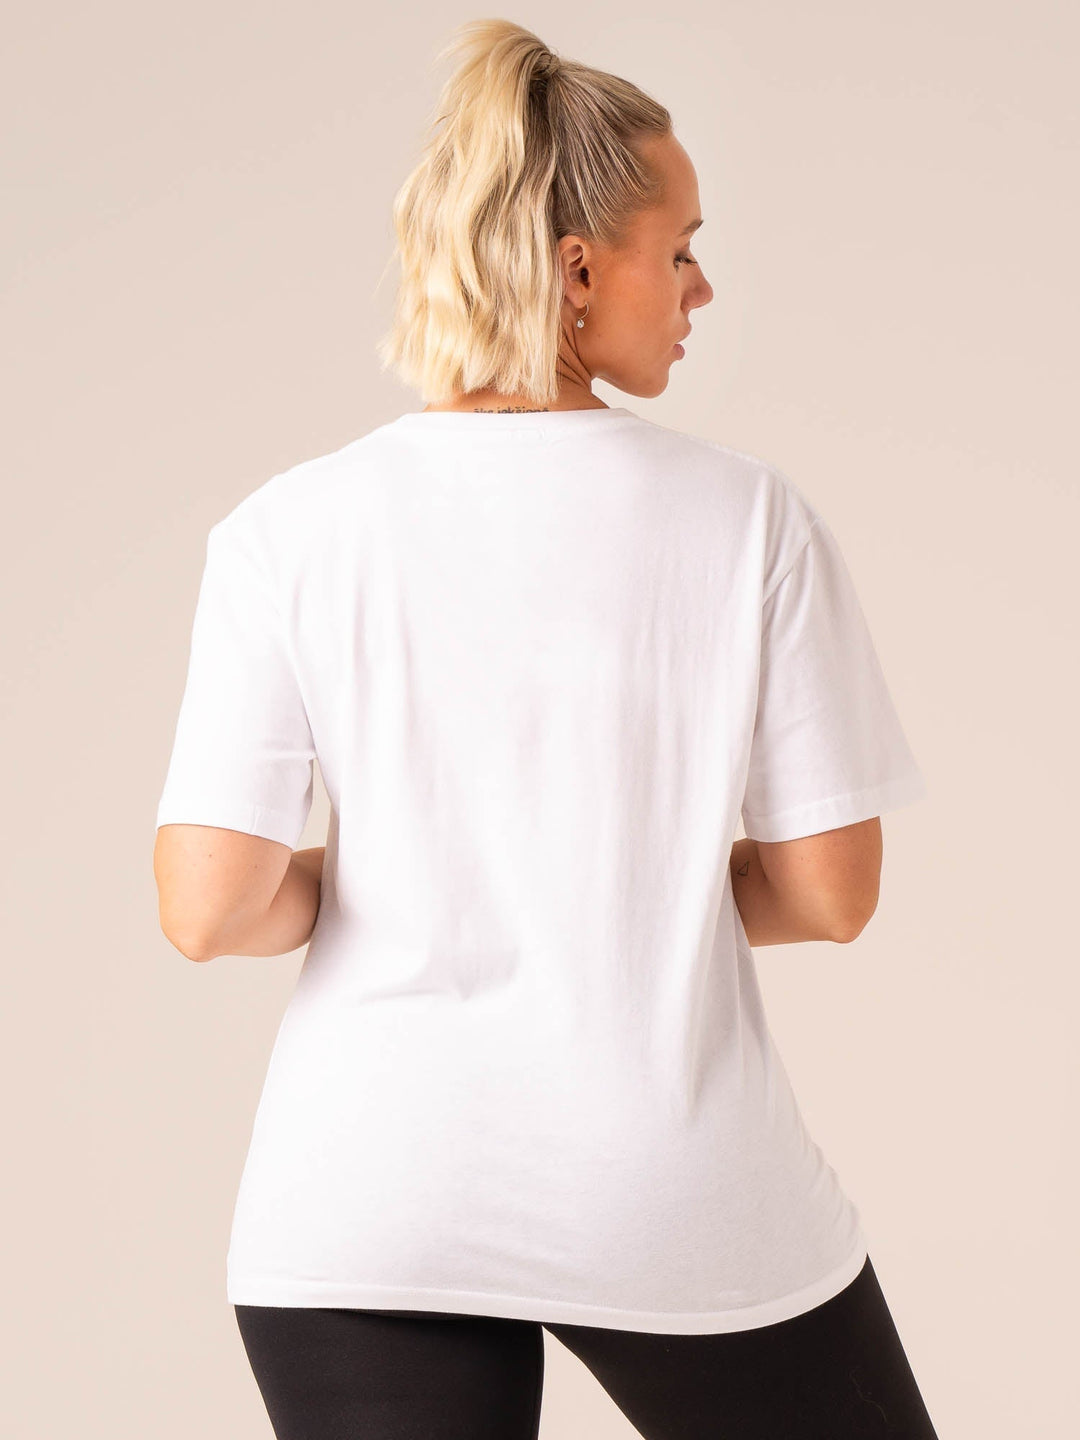 Grit Oversized T-Shirt - White Clothing Ryderwear 